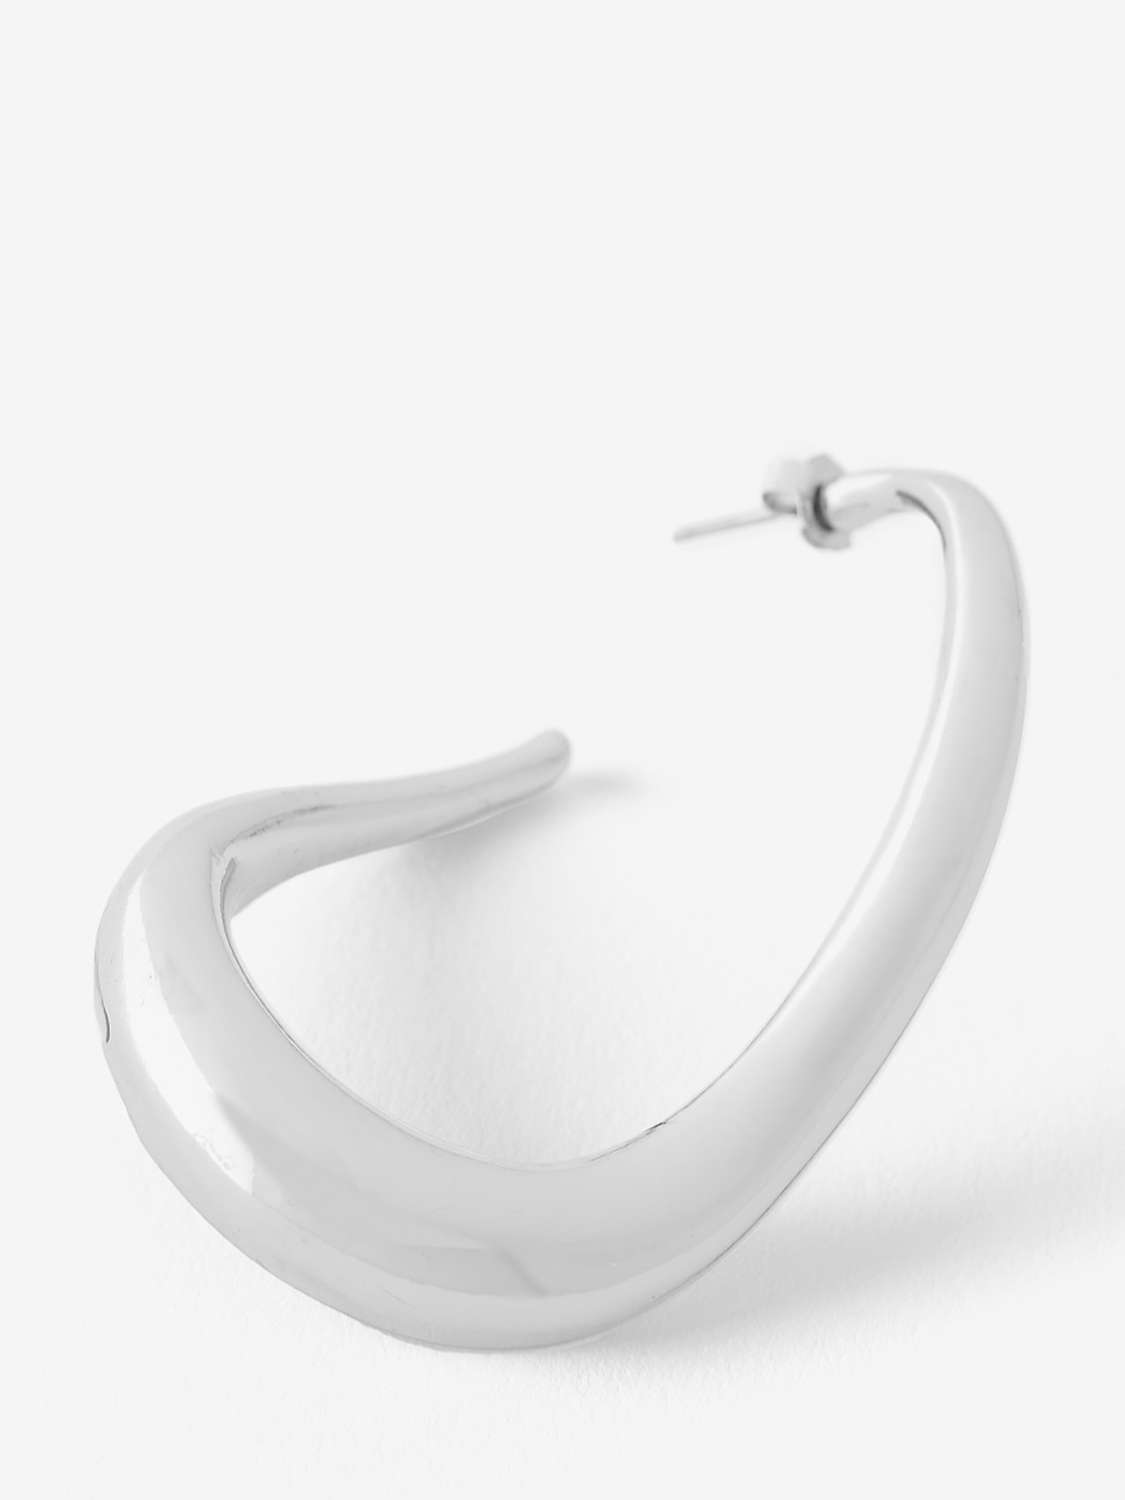 Buy Mint Velvet Statement Irregular Hoop Earrings Online at johnlewis.com